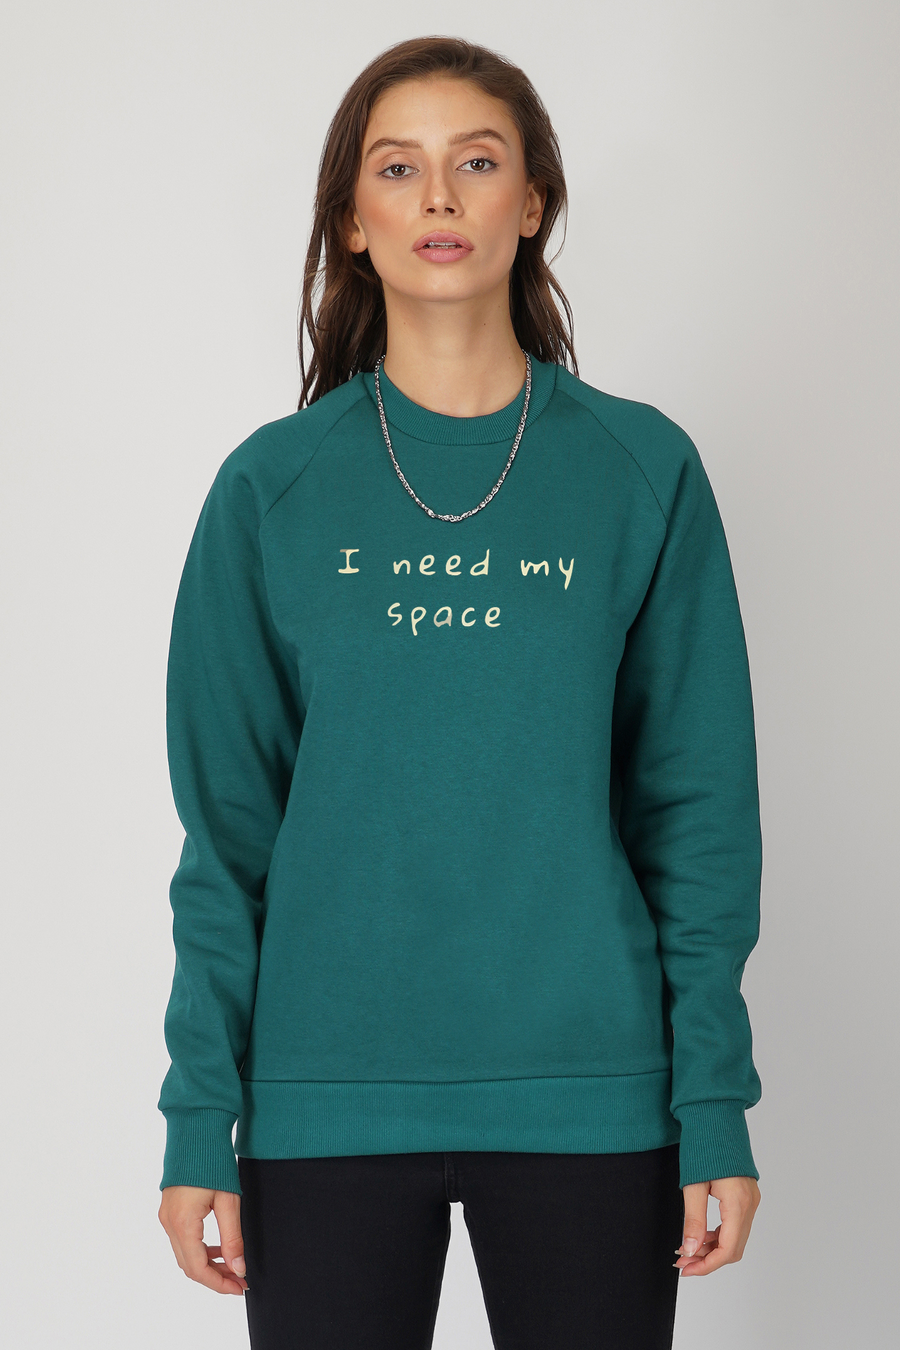 I need my space- Sweatshirt